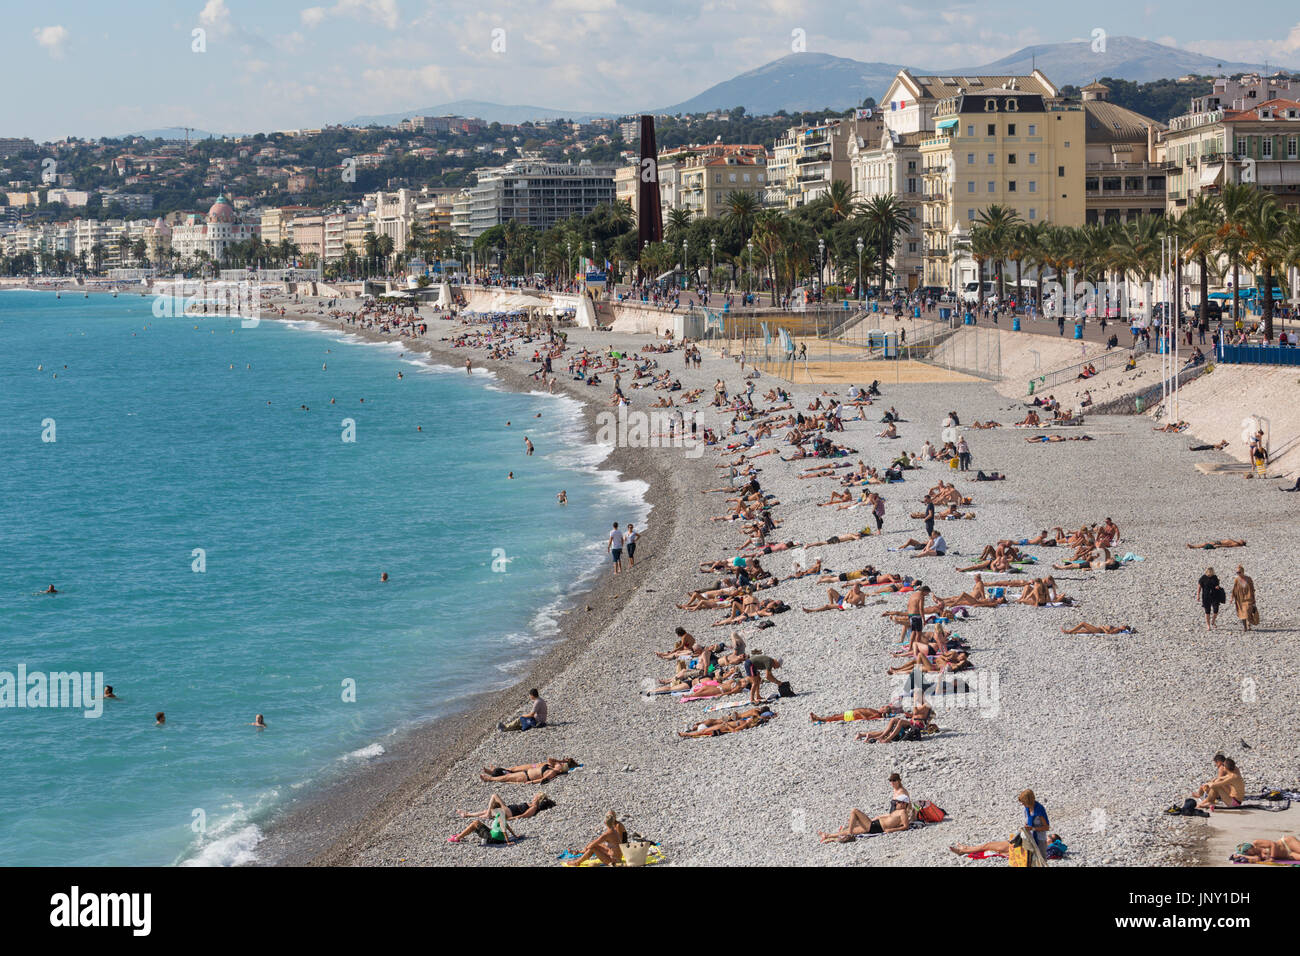 Nizza, Alpes-Maritimes Abteilung, Frankreich - 10. Oktober 2015: Badegäste am Strand von Nizza am Mittelmeer in Alpes-Maritimes, Südosten Frankreichs. Stockfoto